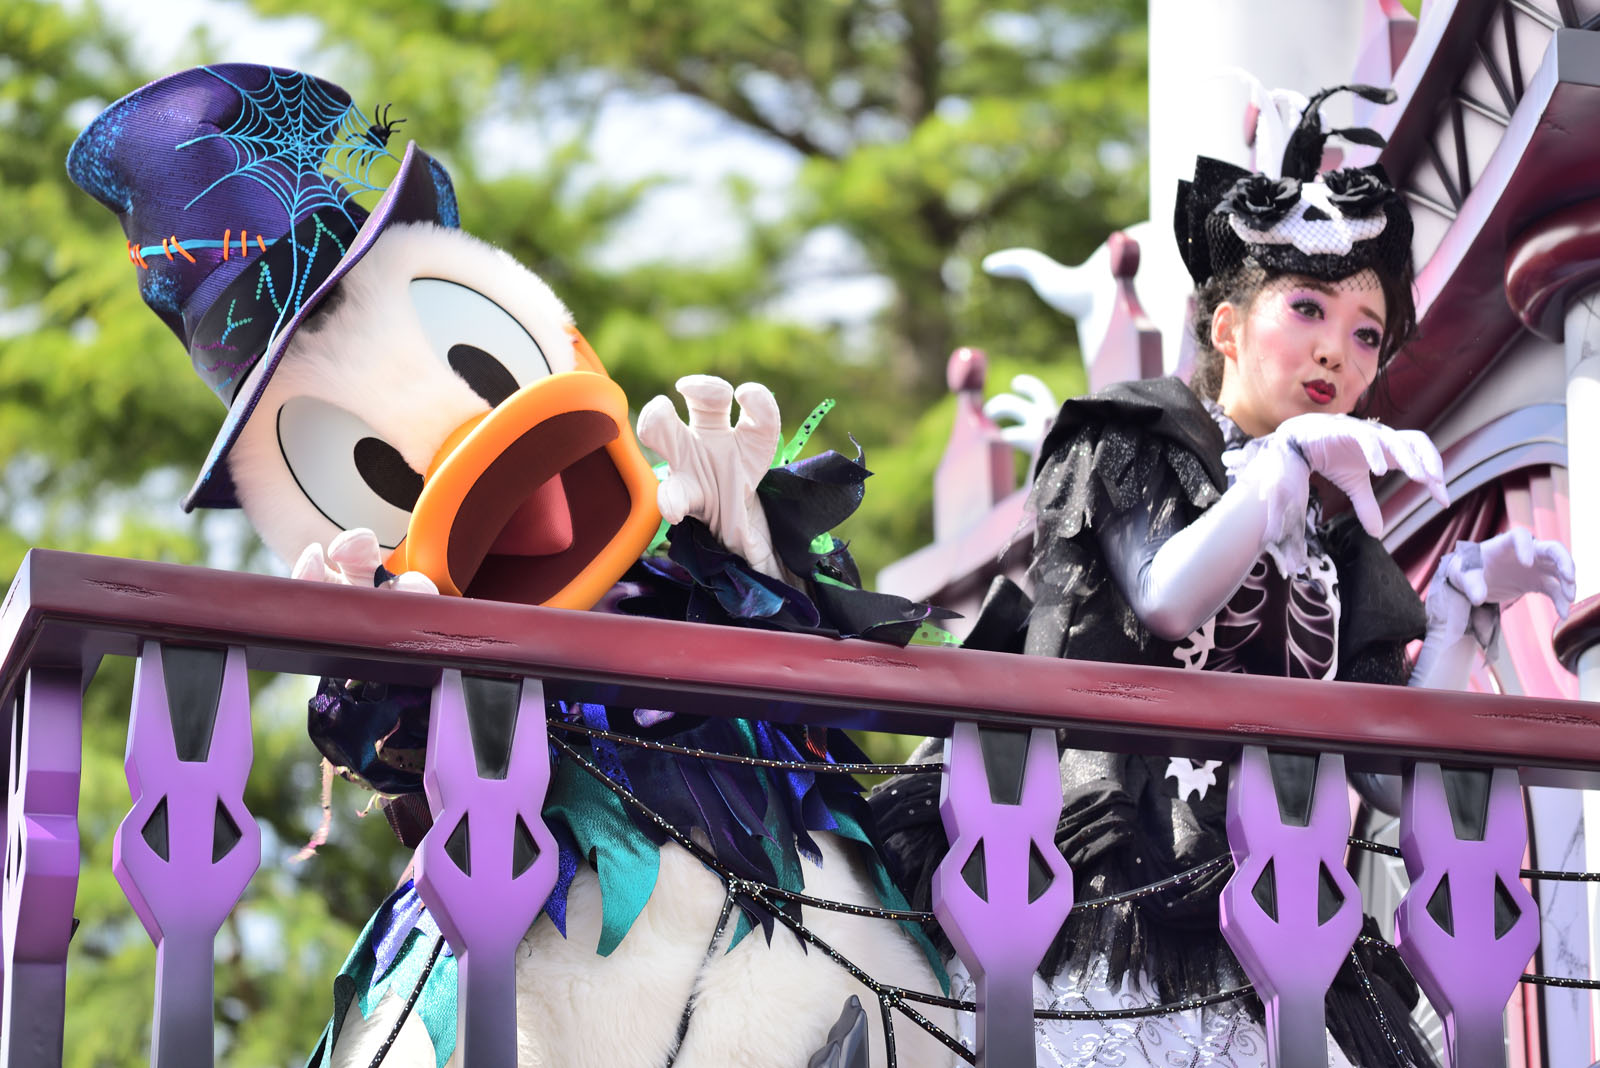 東京ディズニーランド スプーキー“Boo!”パレード2018 ドナルド